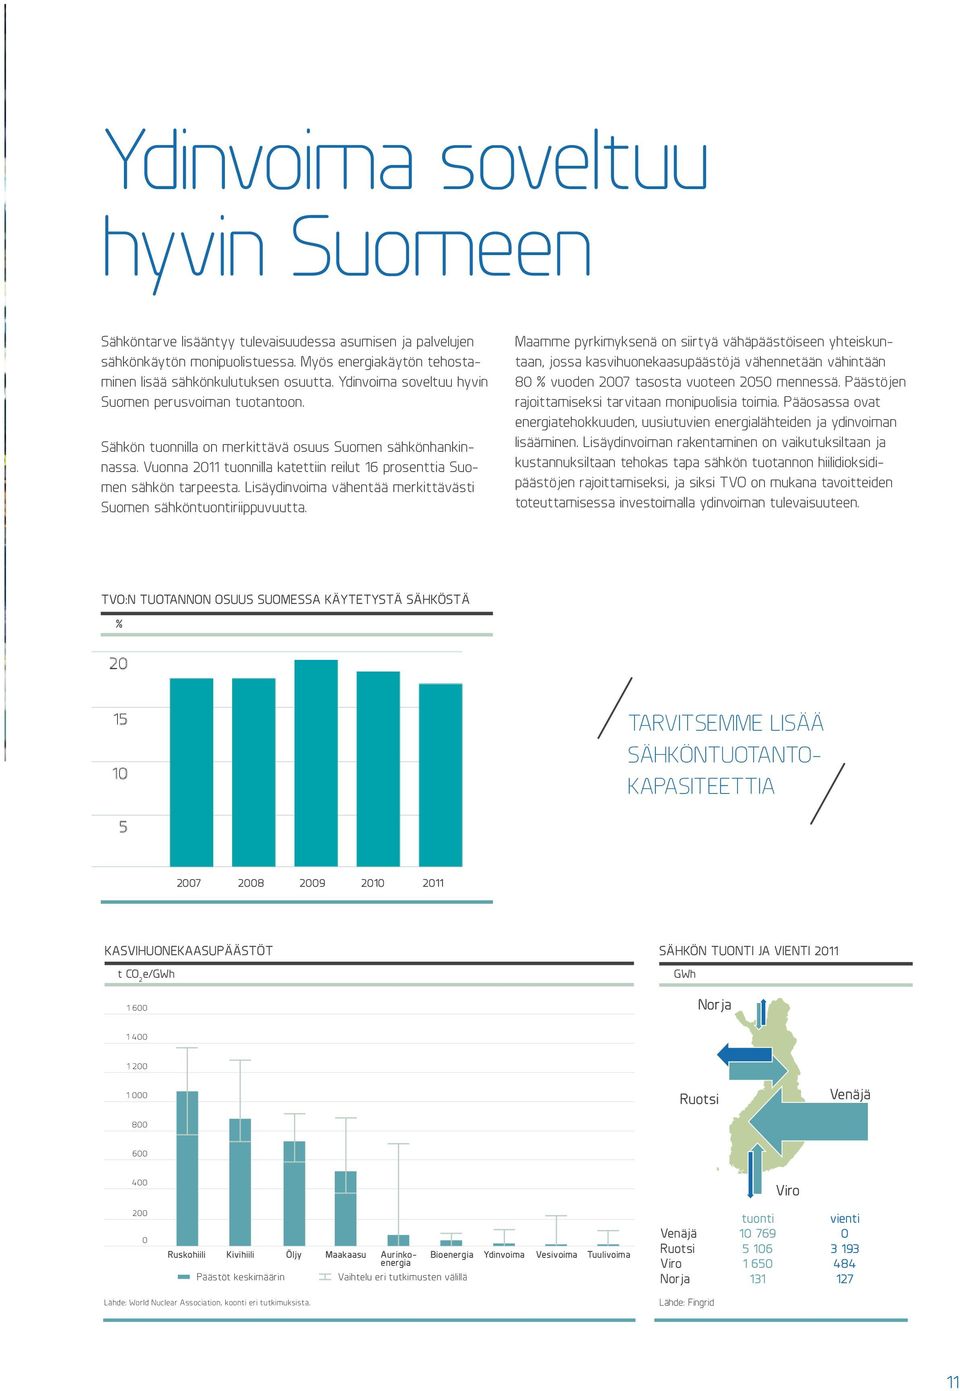 Lisäydinvoima vähentää merkittävästi Suomen sähköntuontiriippuvuutta.